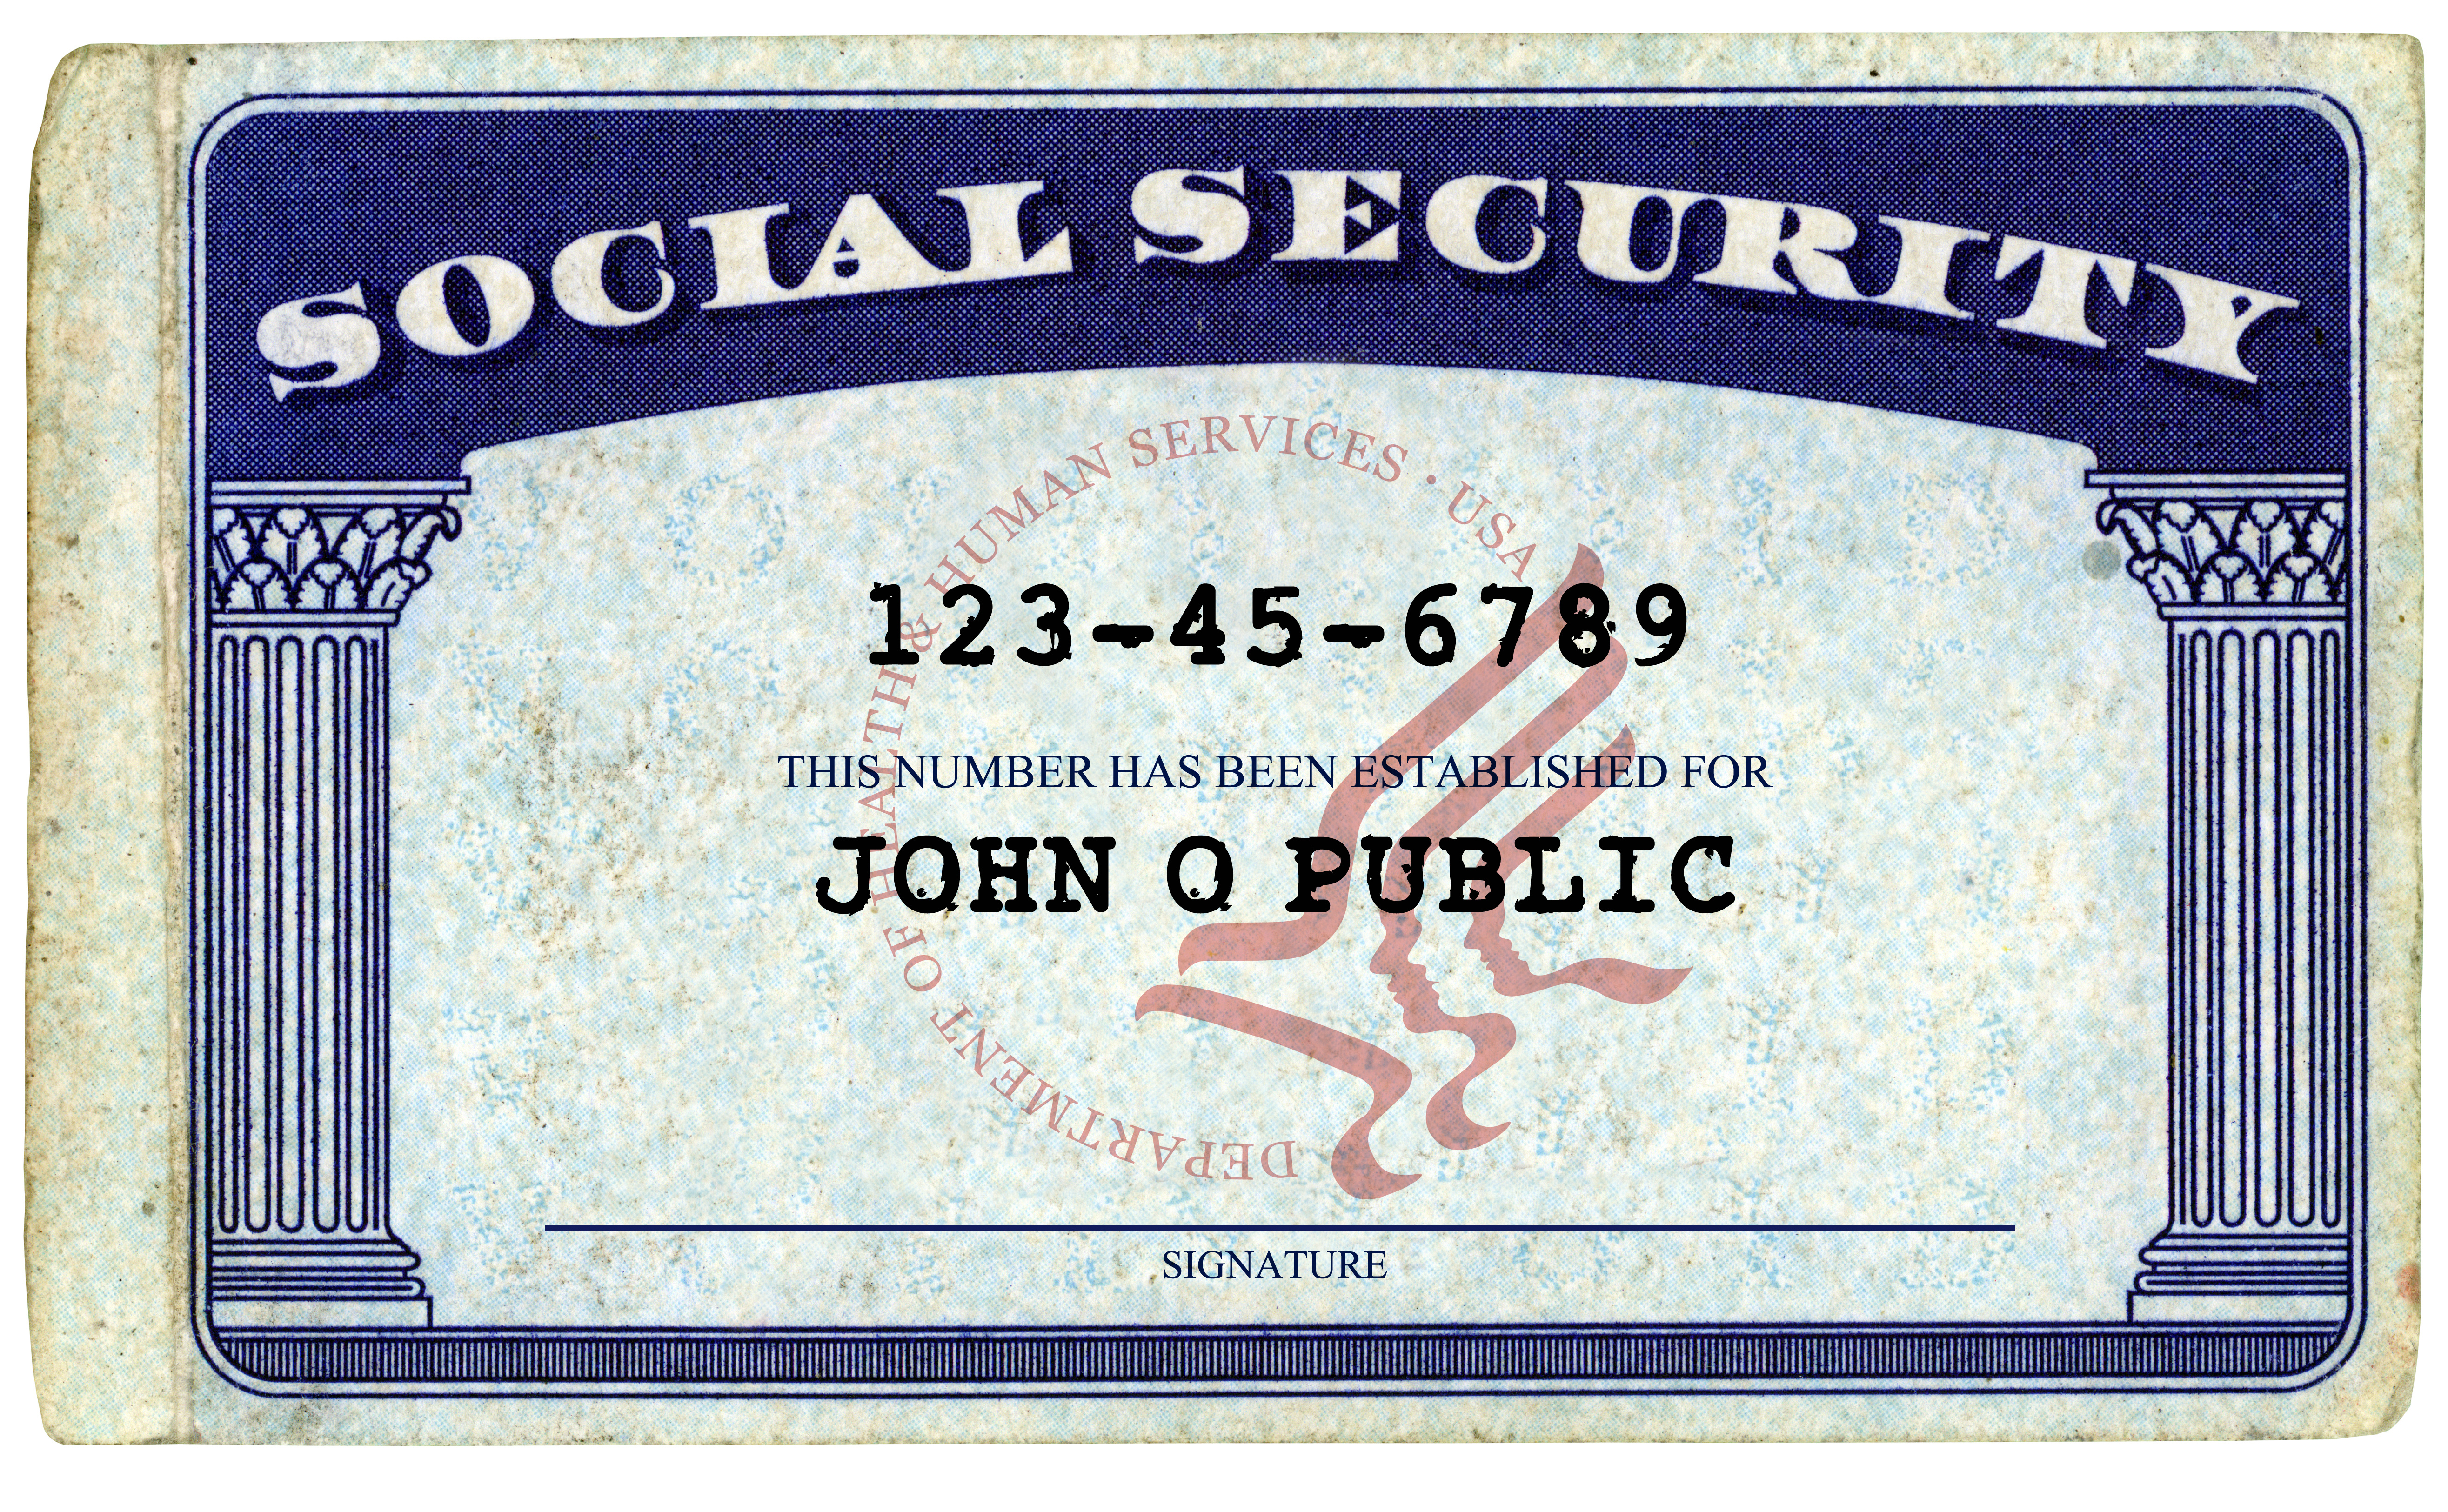 social security card